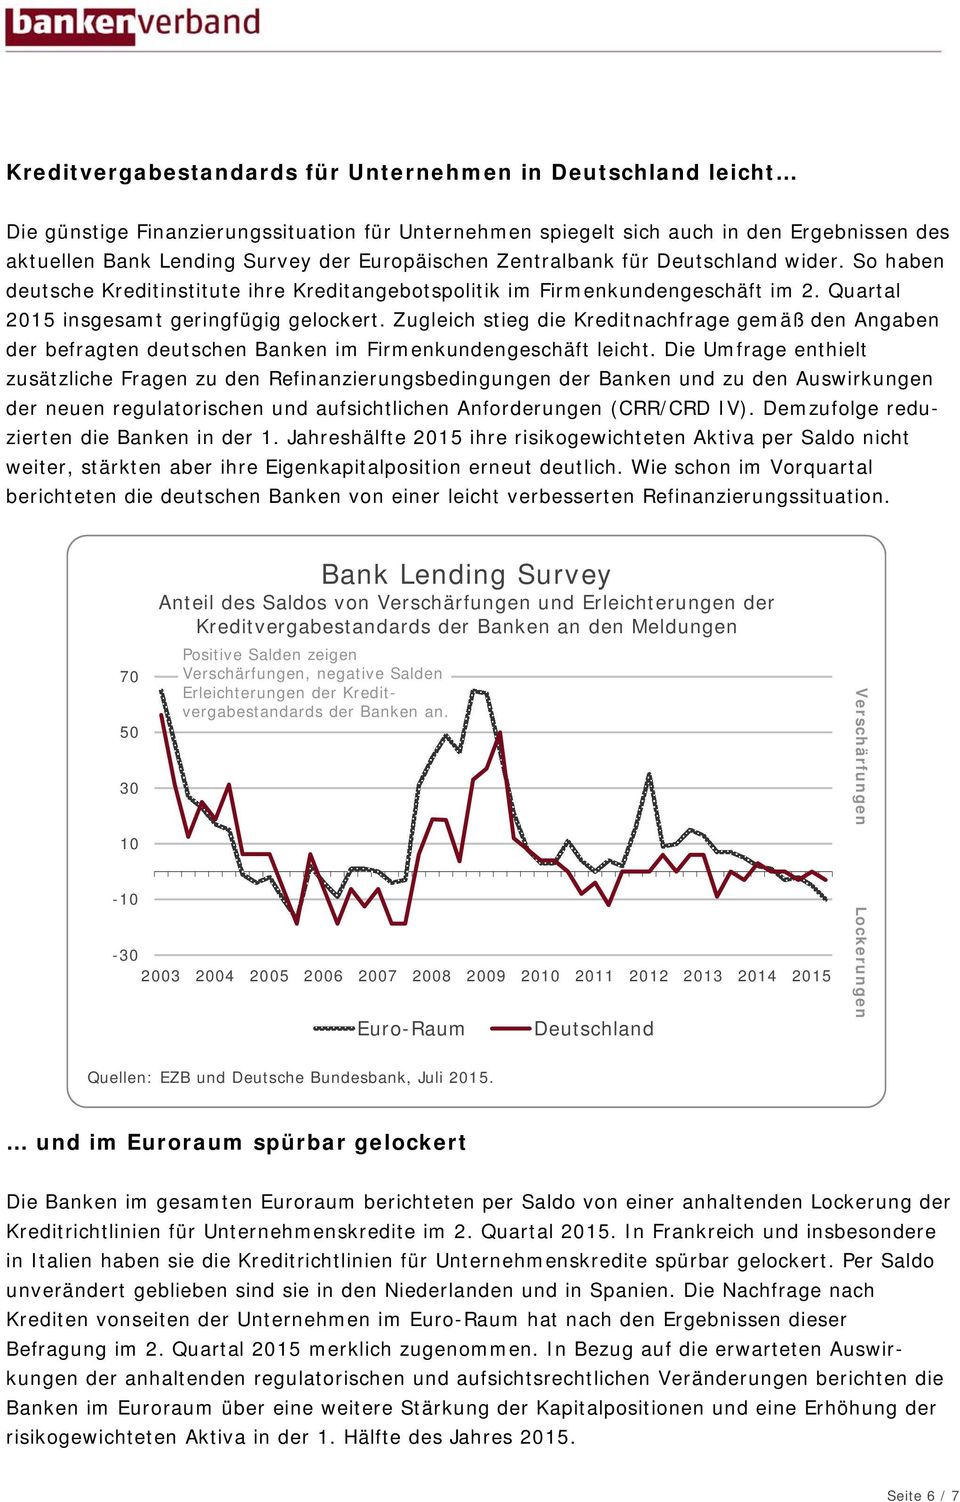 Zugleich stieg die Kreditnachfrage gemäß den Angaben der befragten deutschen Banken im Firmenkundengeschäft leicht.